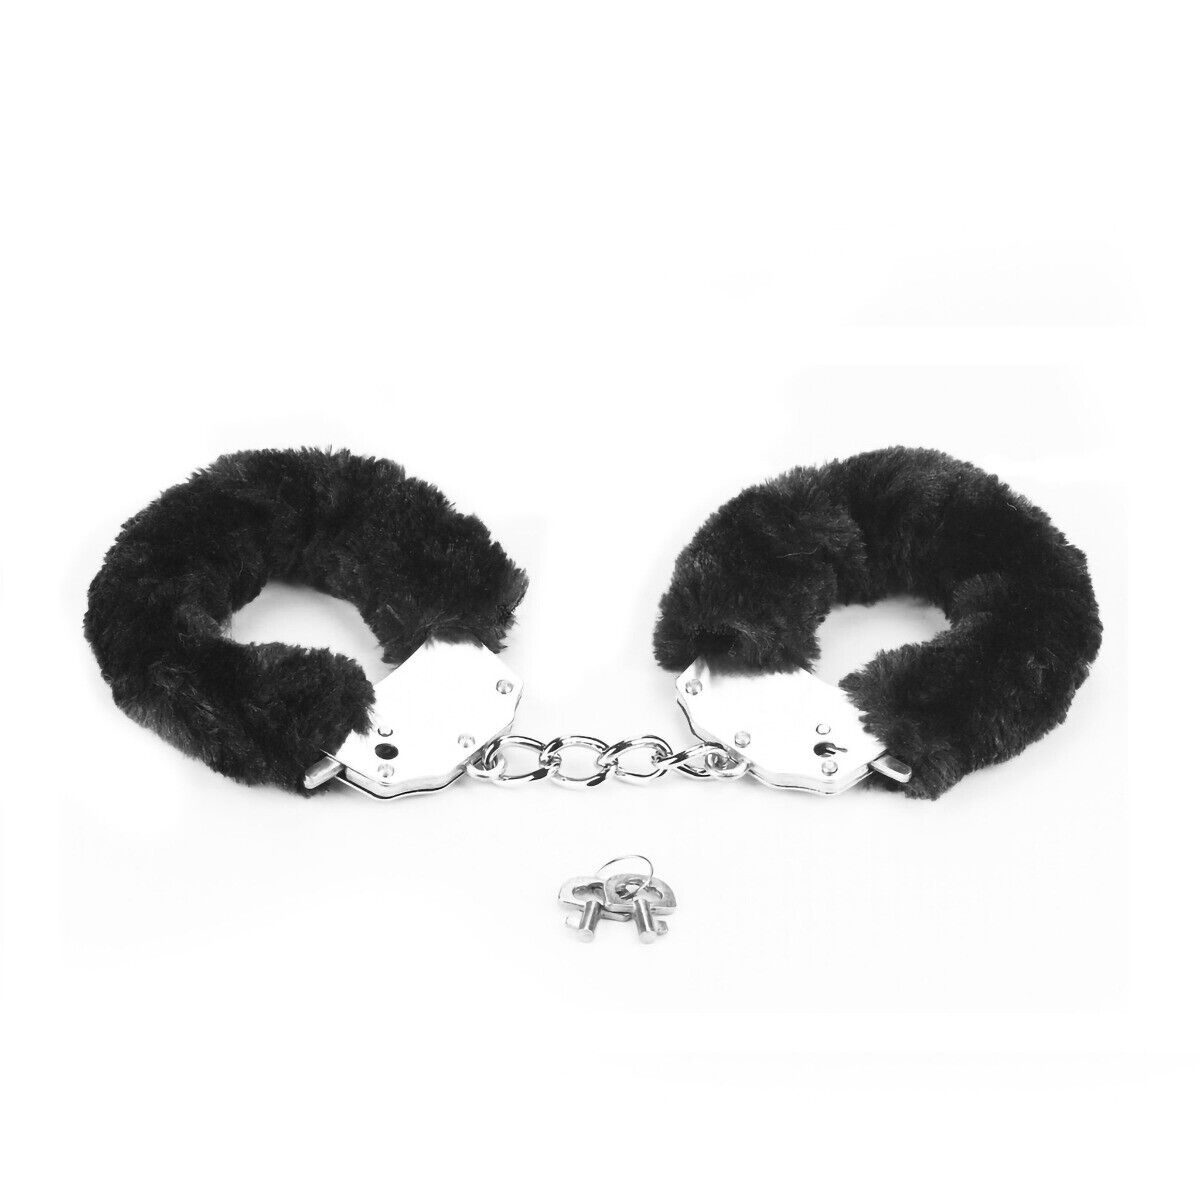 Steel Black Fuzzy Furry Handcuffs Hand Cuffs SM Bondage Sex Toy